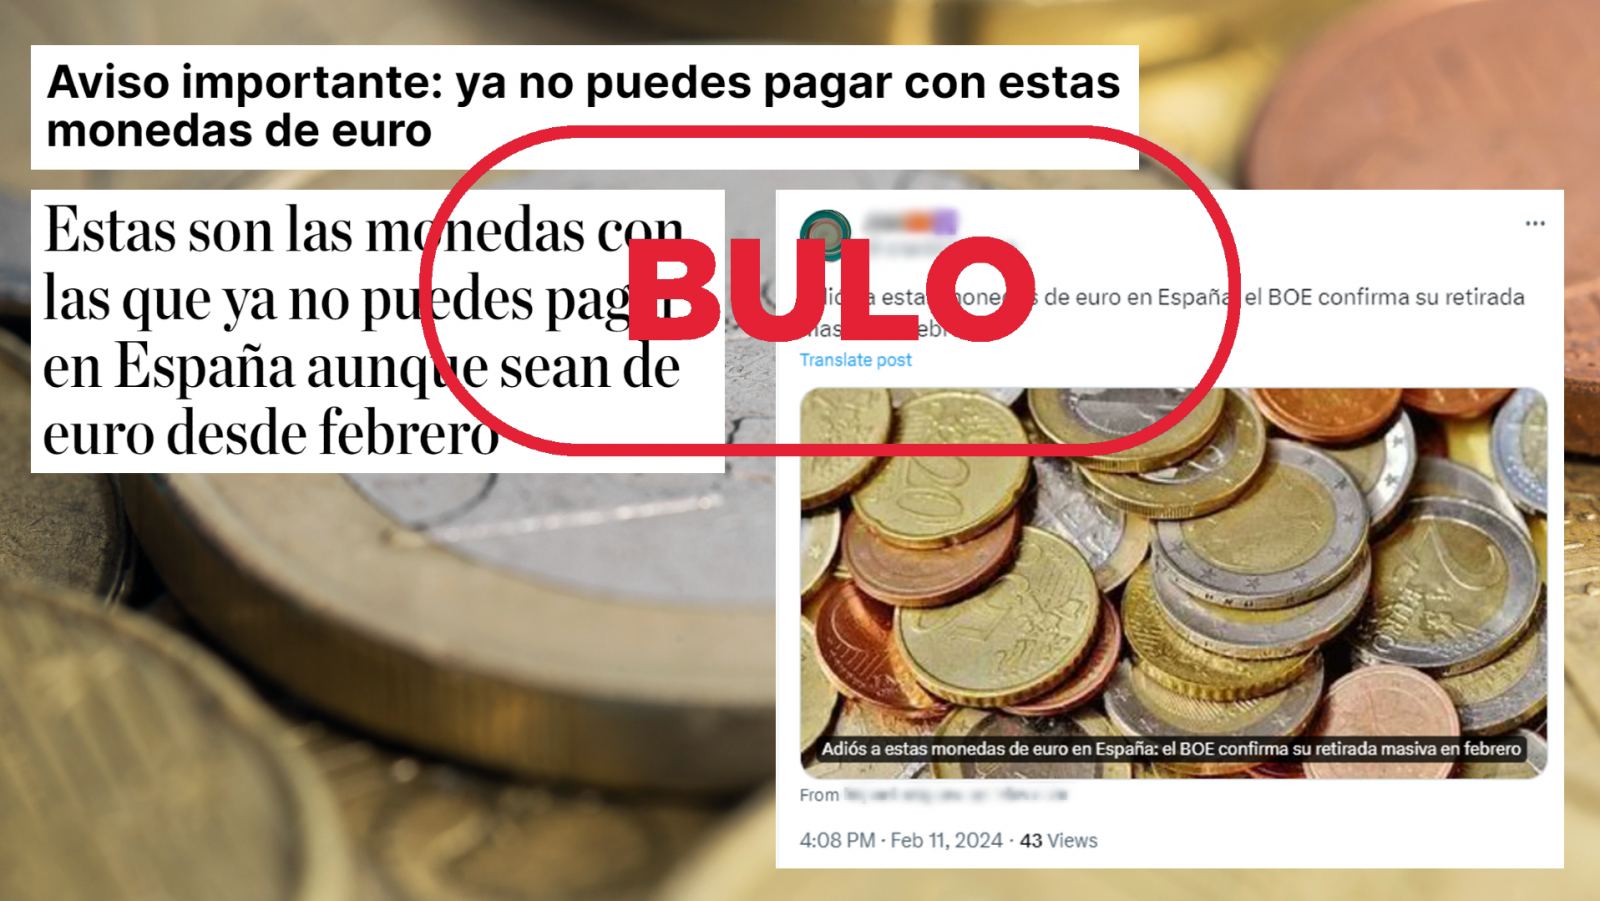 El Banco de España no ha ordenado la retirada de estas monedas de euro